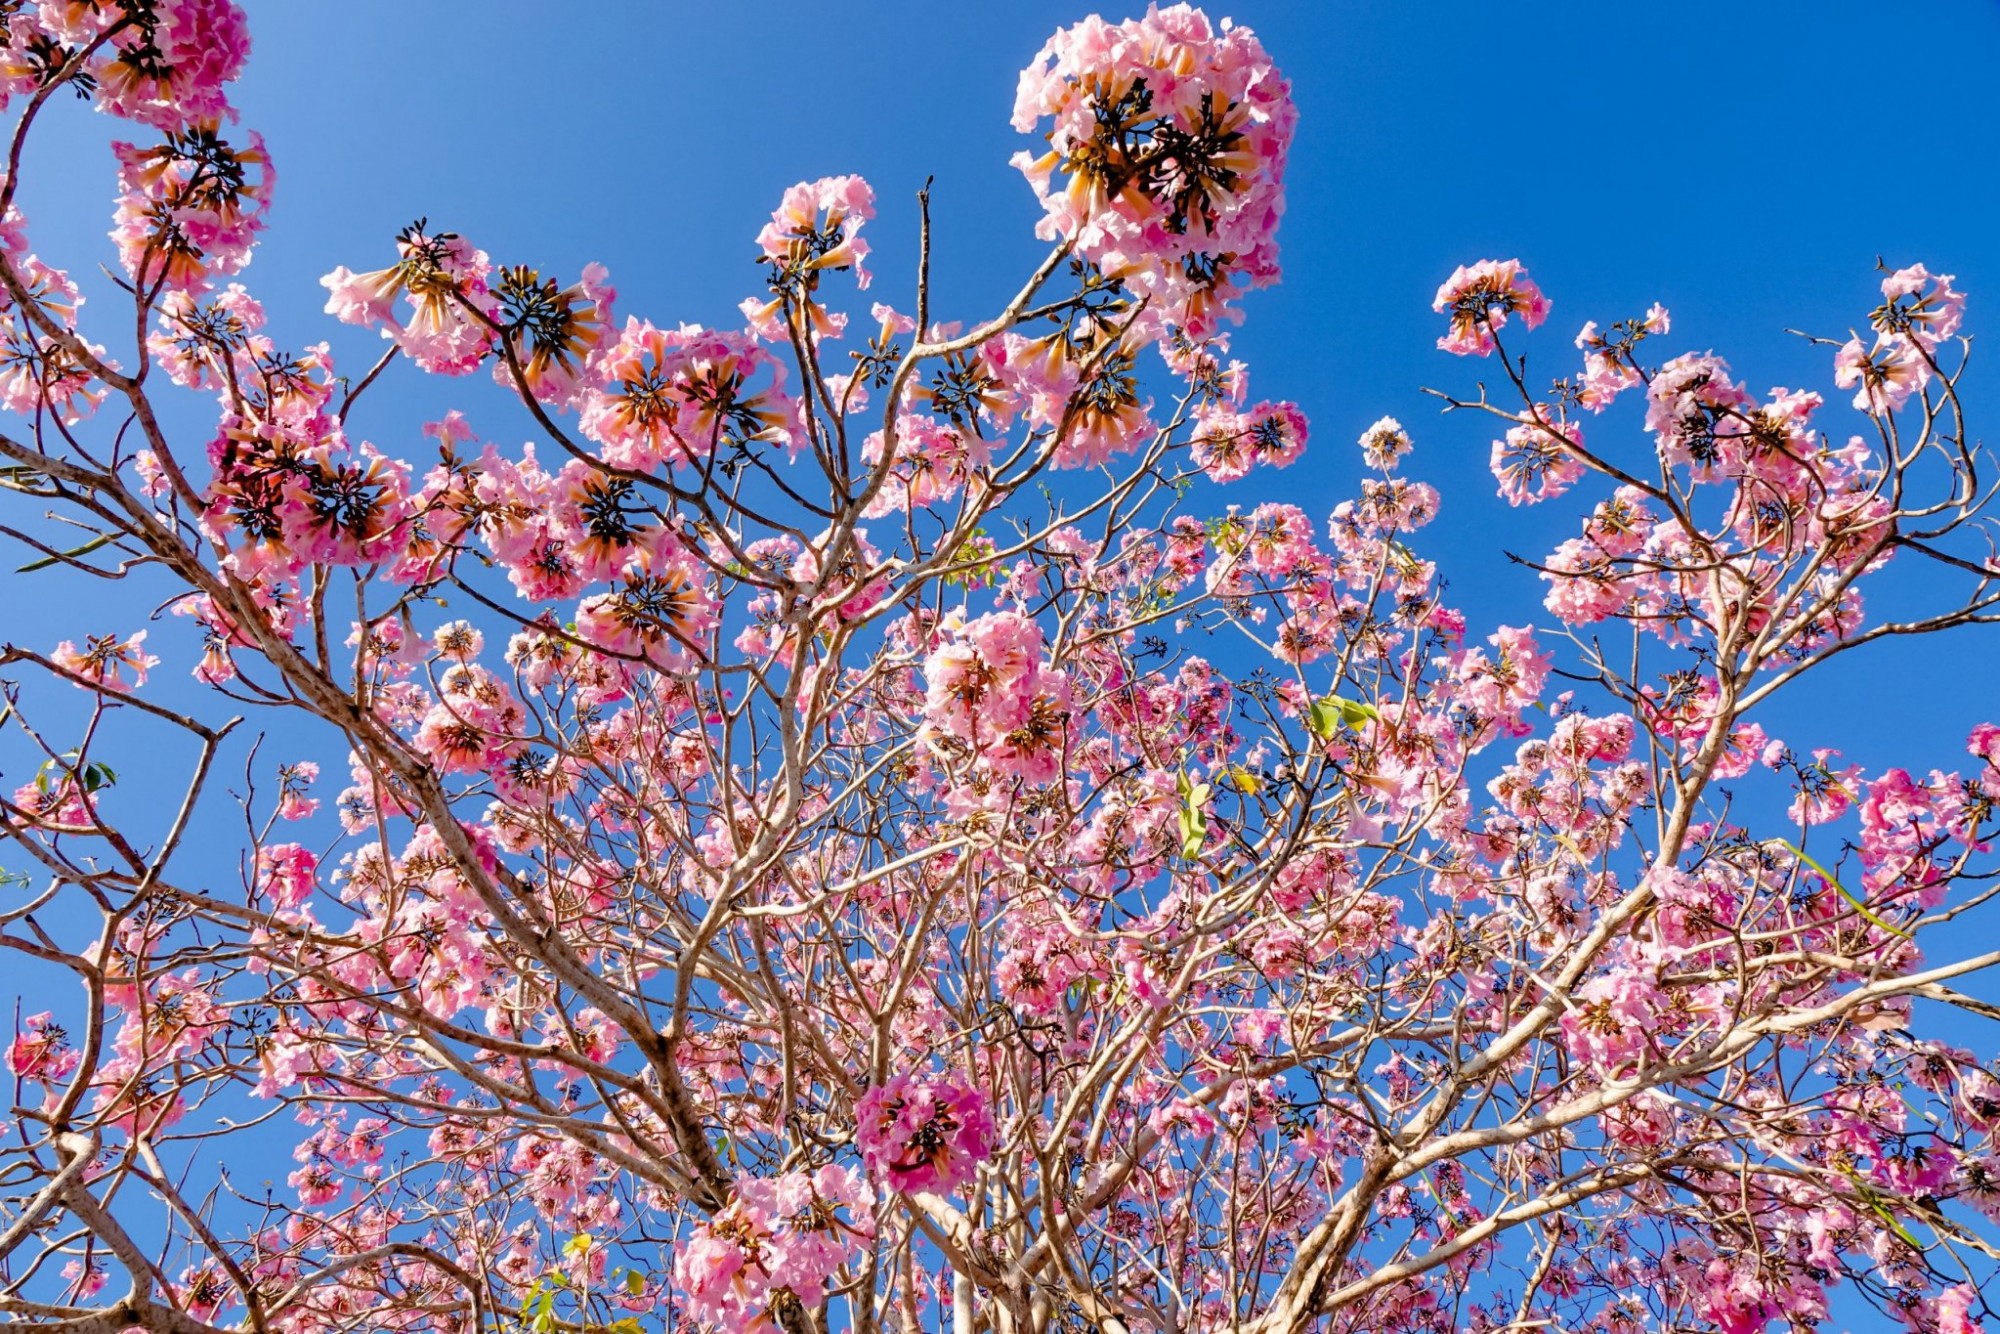 Tùy theo điều kiện thời tiết mà hoa có thể trổ bông sớm hoặc muộn hơn và mỗi năm chỉ có một mùa hoa này.